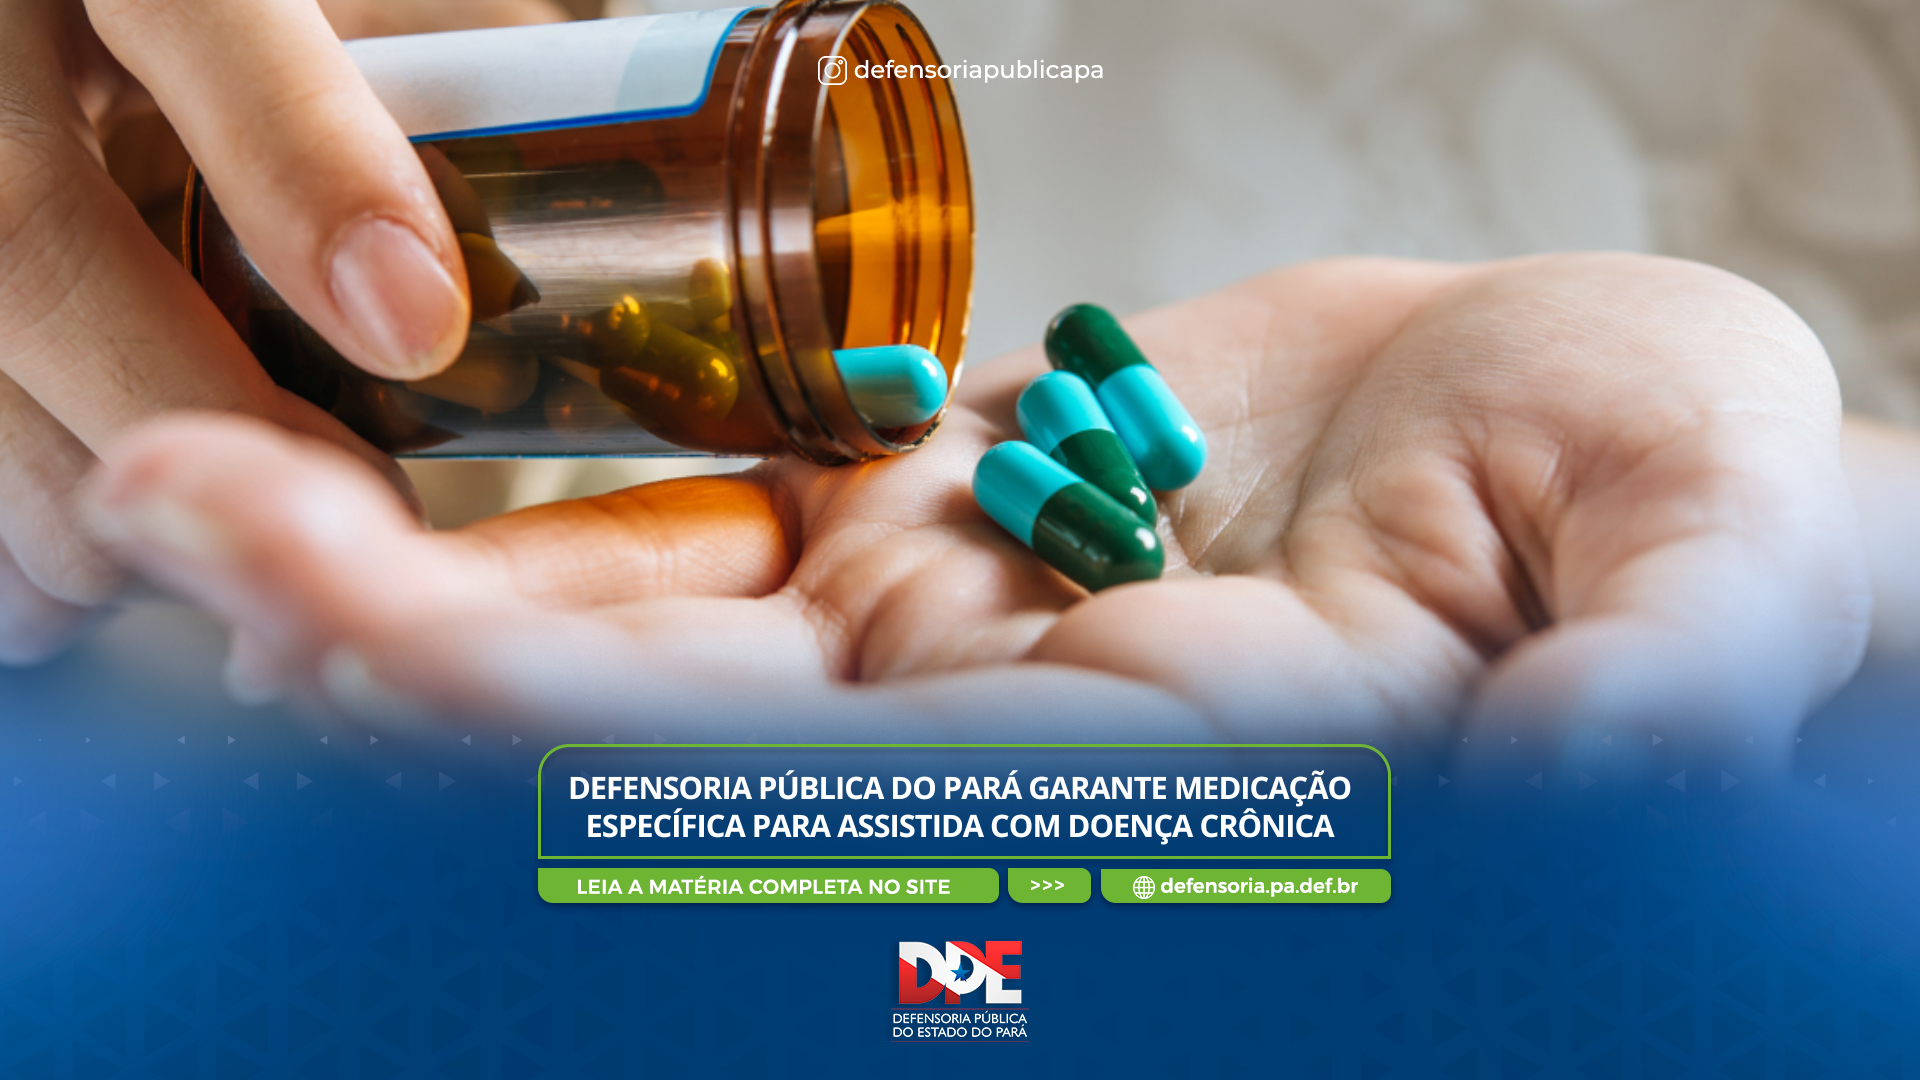 Defensoria Pública do Pará garante medicação específica para assistida com doença crônica